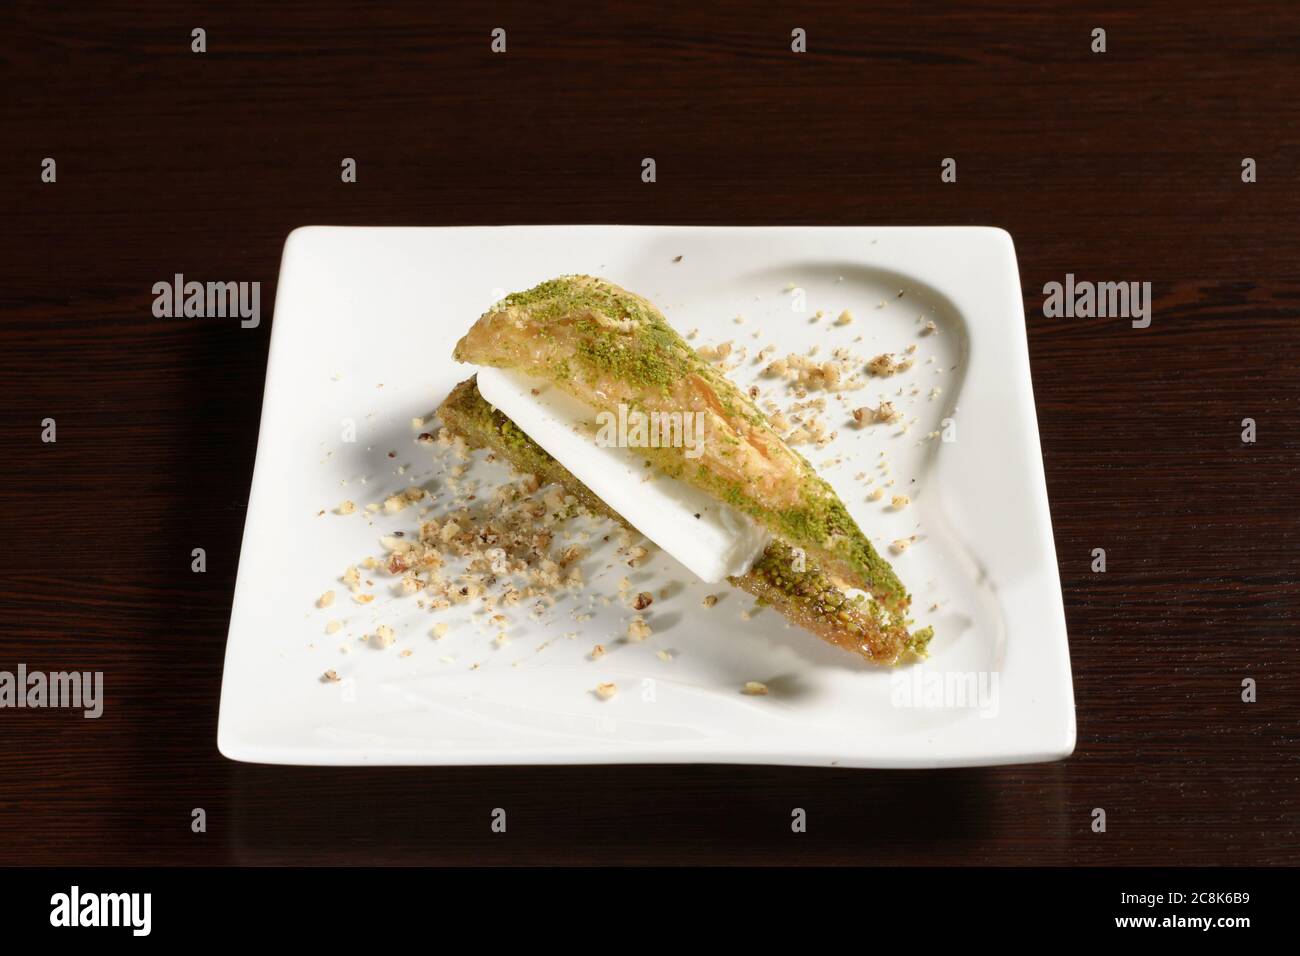 Türkische Süße Blätterteig mit Eis und Pistazien dreieckige Form. Fotos für Restaurant- und Cafe-Menüs Stockfoto